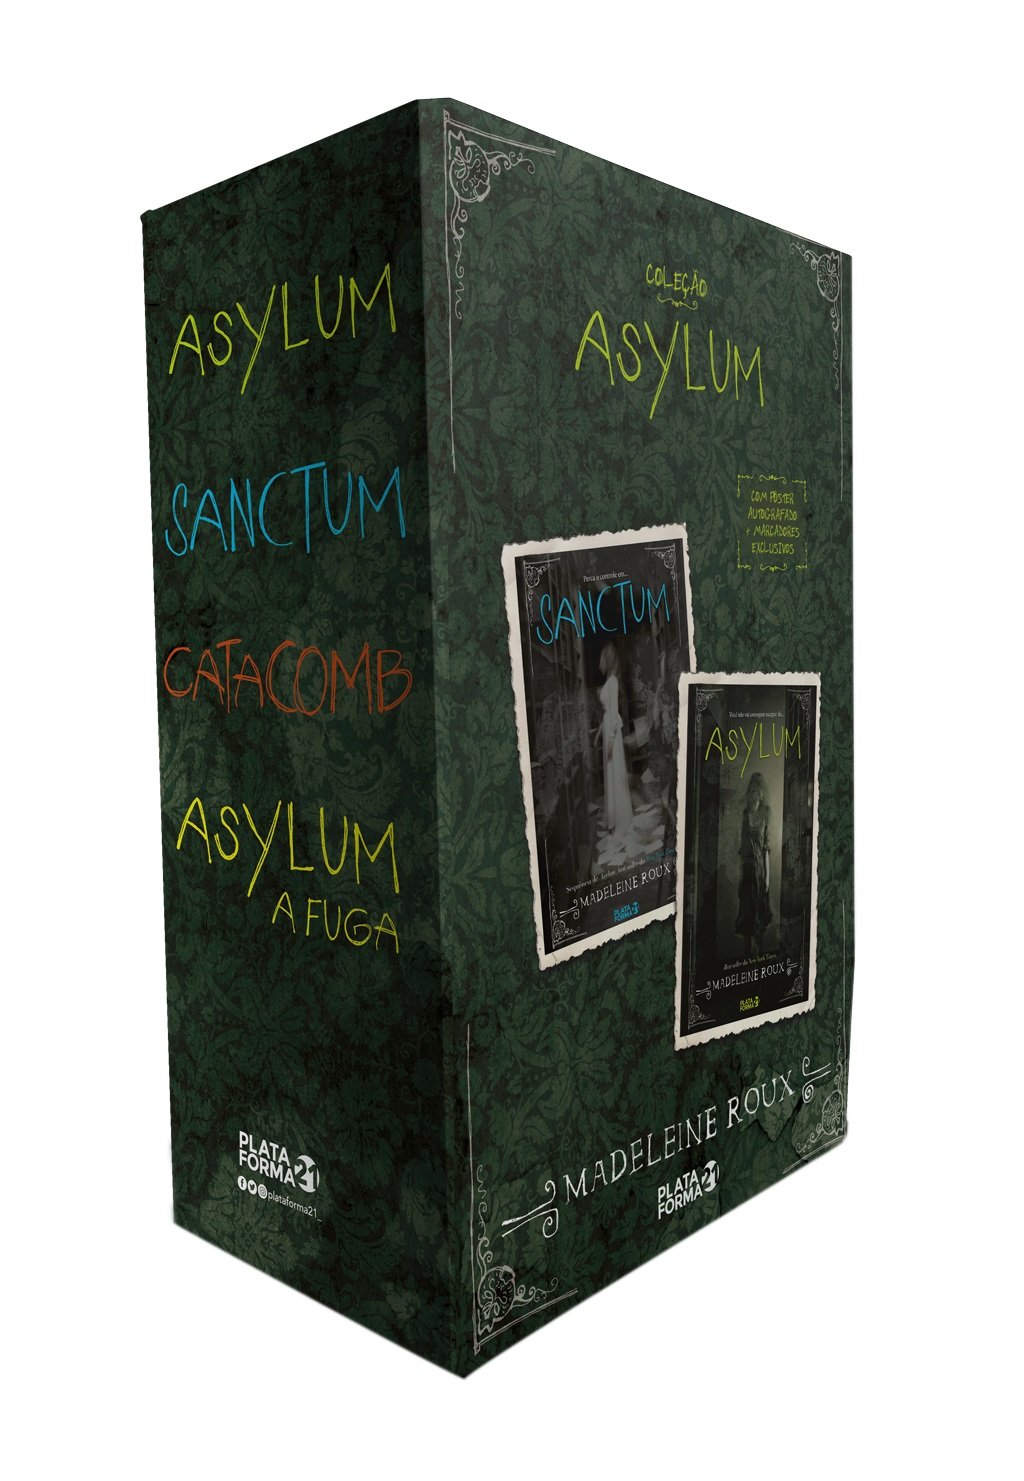 Box Premium Harry Potter - 7 volumes: com 02 marcadores – Pôster exclu